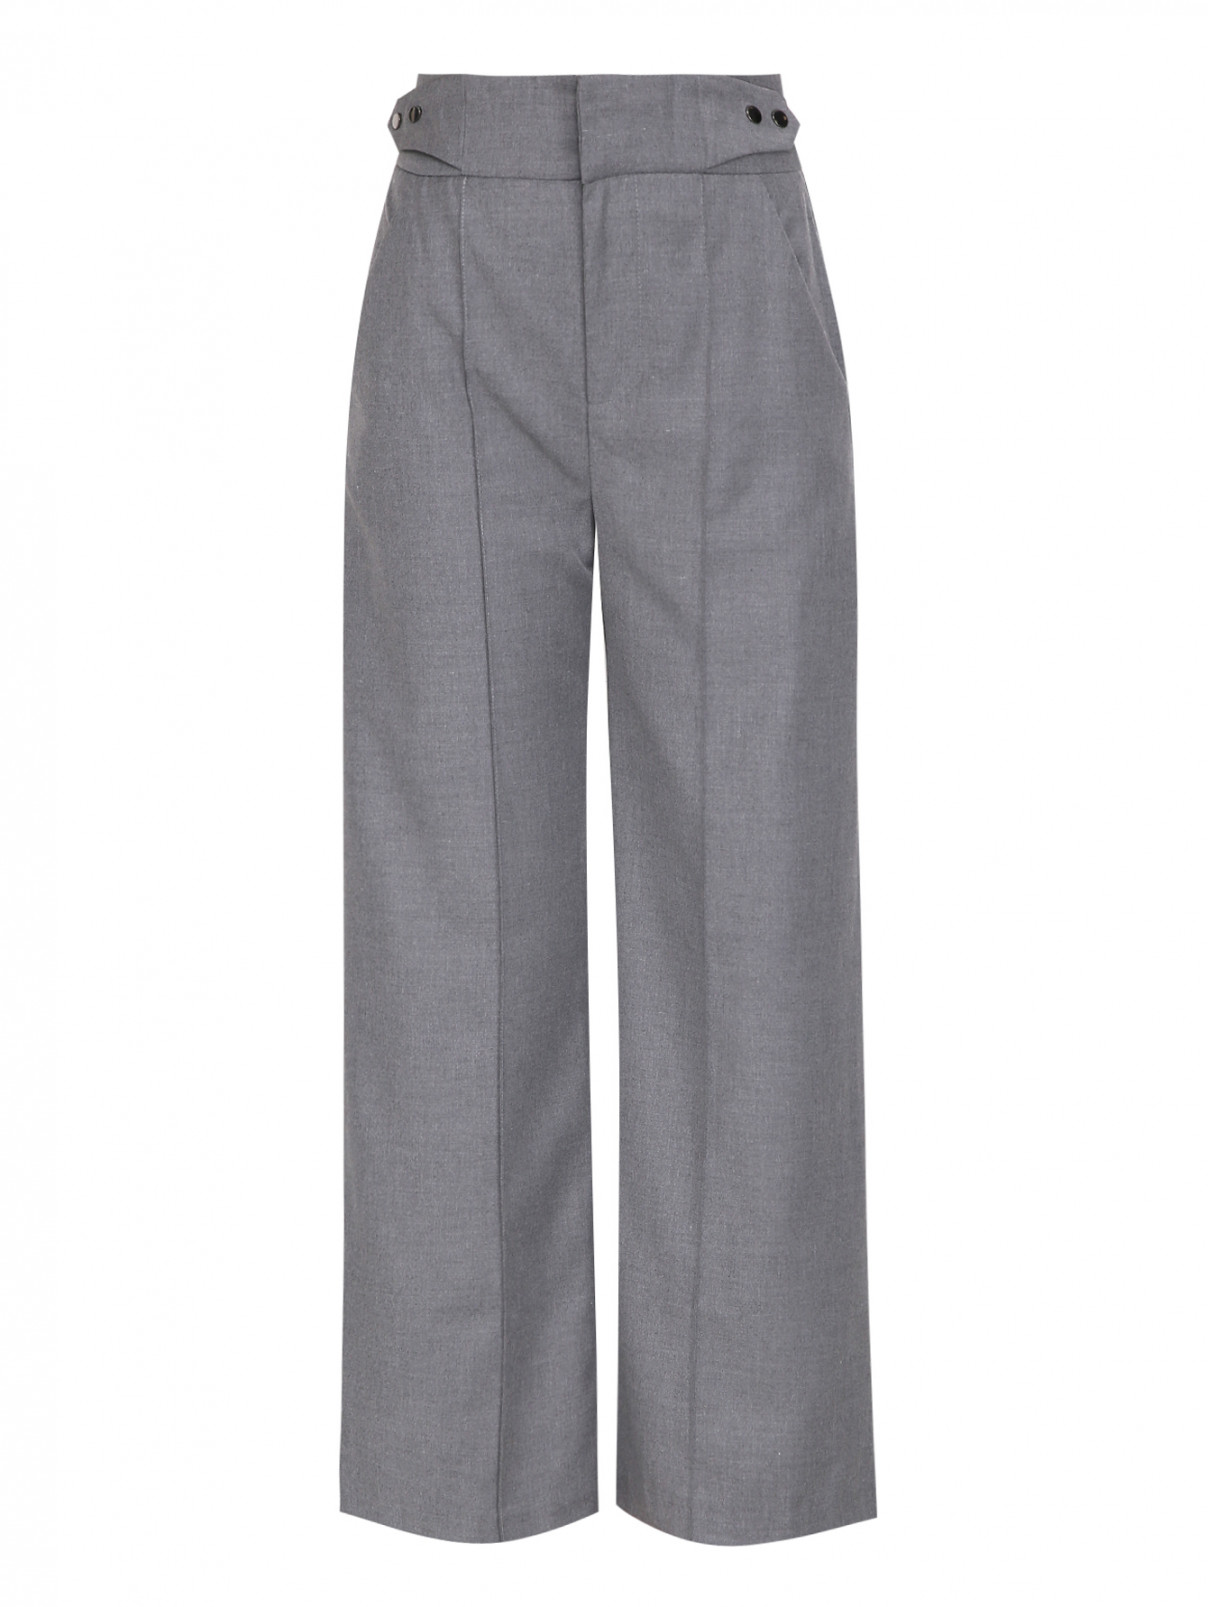 Прямые брюки с отстрочкой Suncoo  –  Общий вид  – Цвет:  Серый